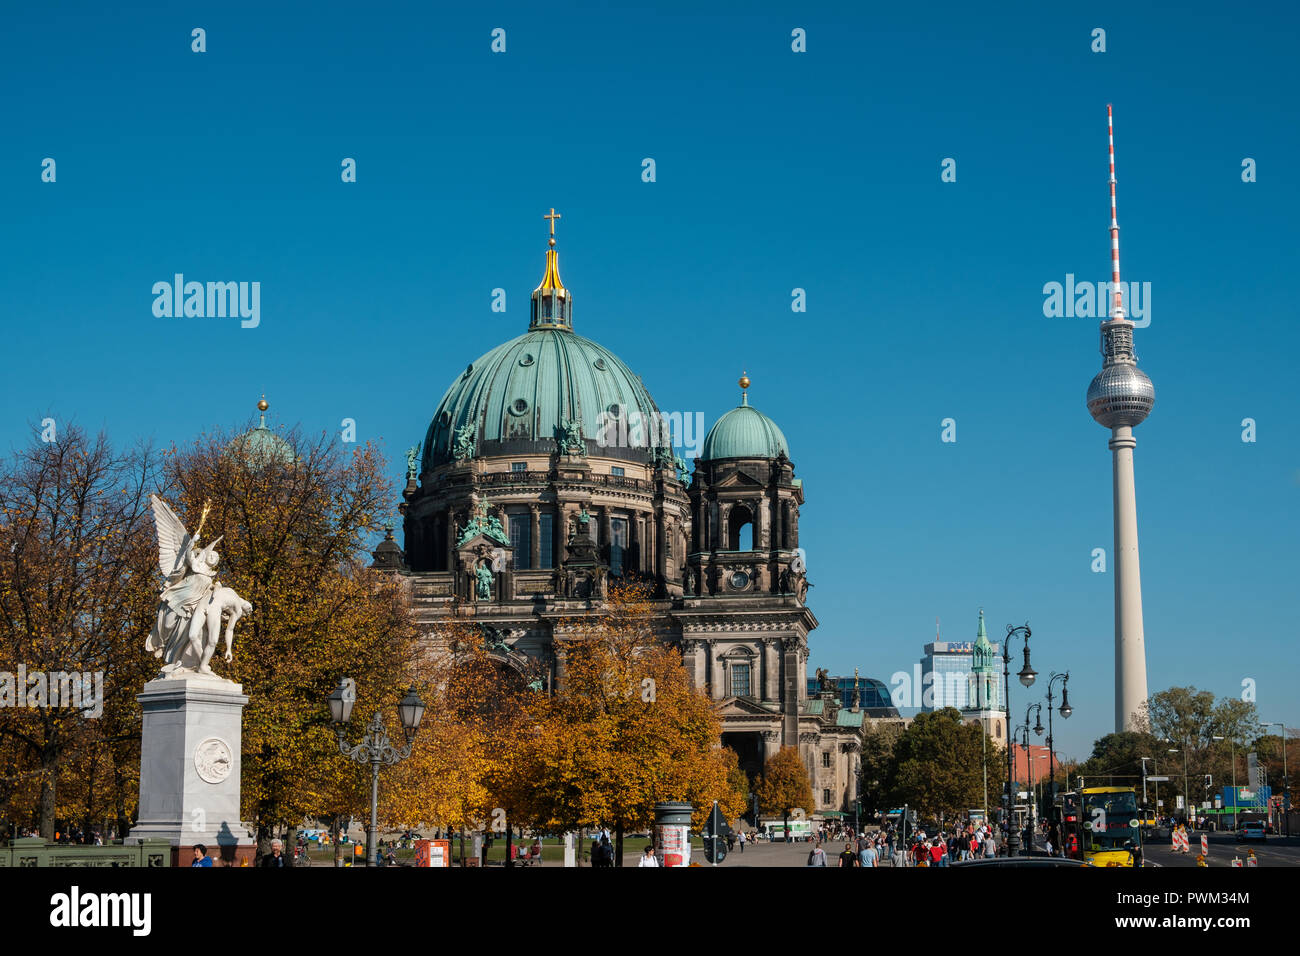 Berlin, Deutschland - Oktober 2018: Die Berliner Dom (Berliner Dom) und den Fernsehturm (Fernsehturm) in Berlin, Mitte, Deutschland Stockfoto